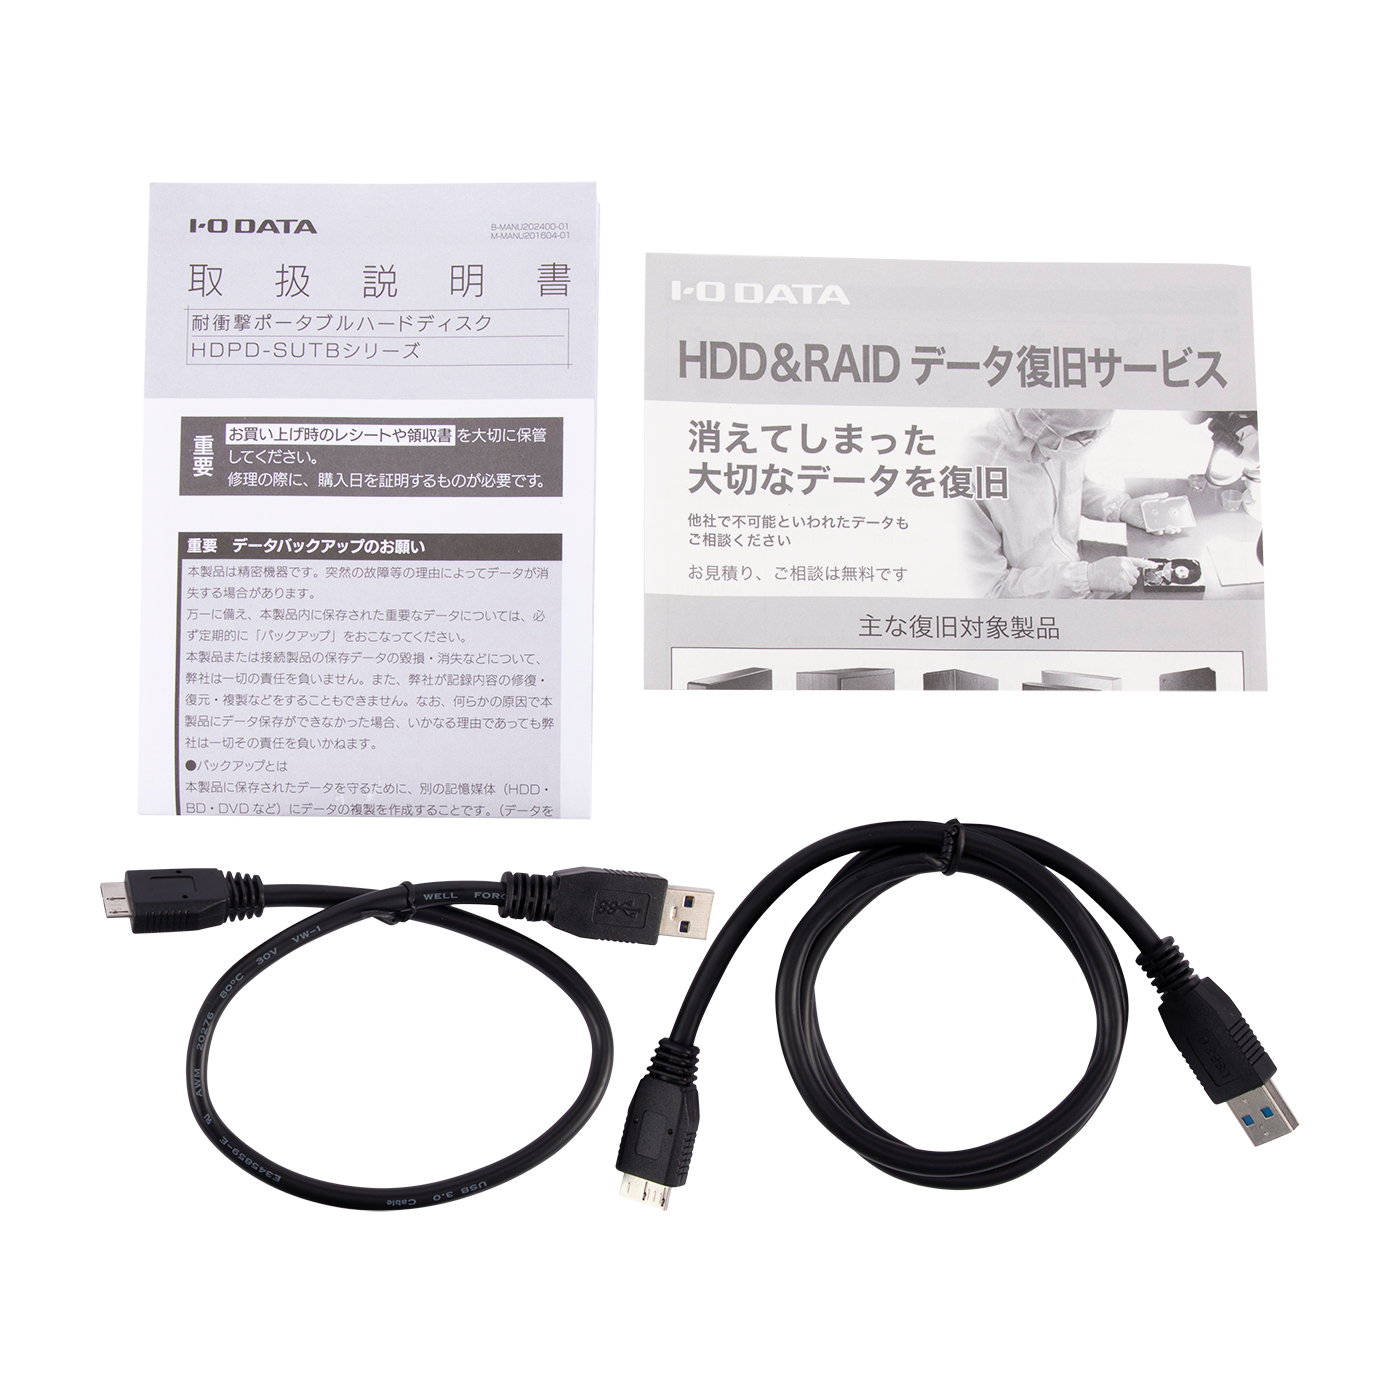 IOデータ USB 3.0 ブラック 21 2.0対応 1.0TB カクうす ポータブルハードディスク HDPX-UTA1.0K